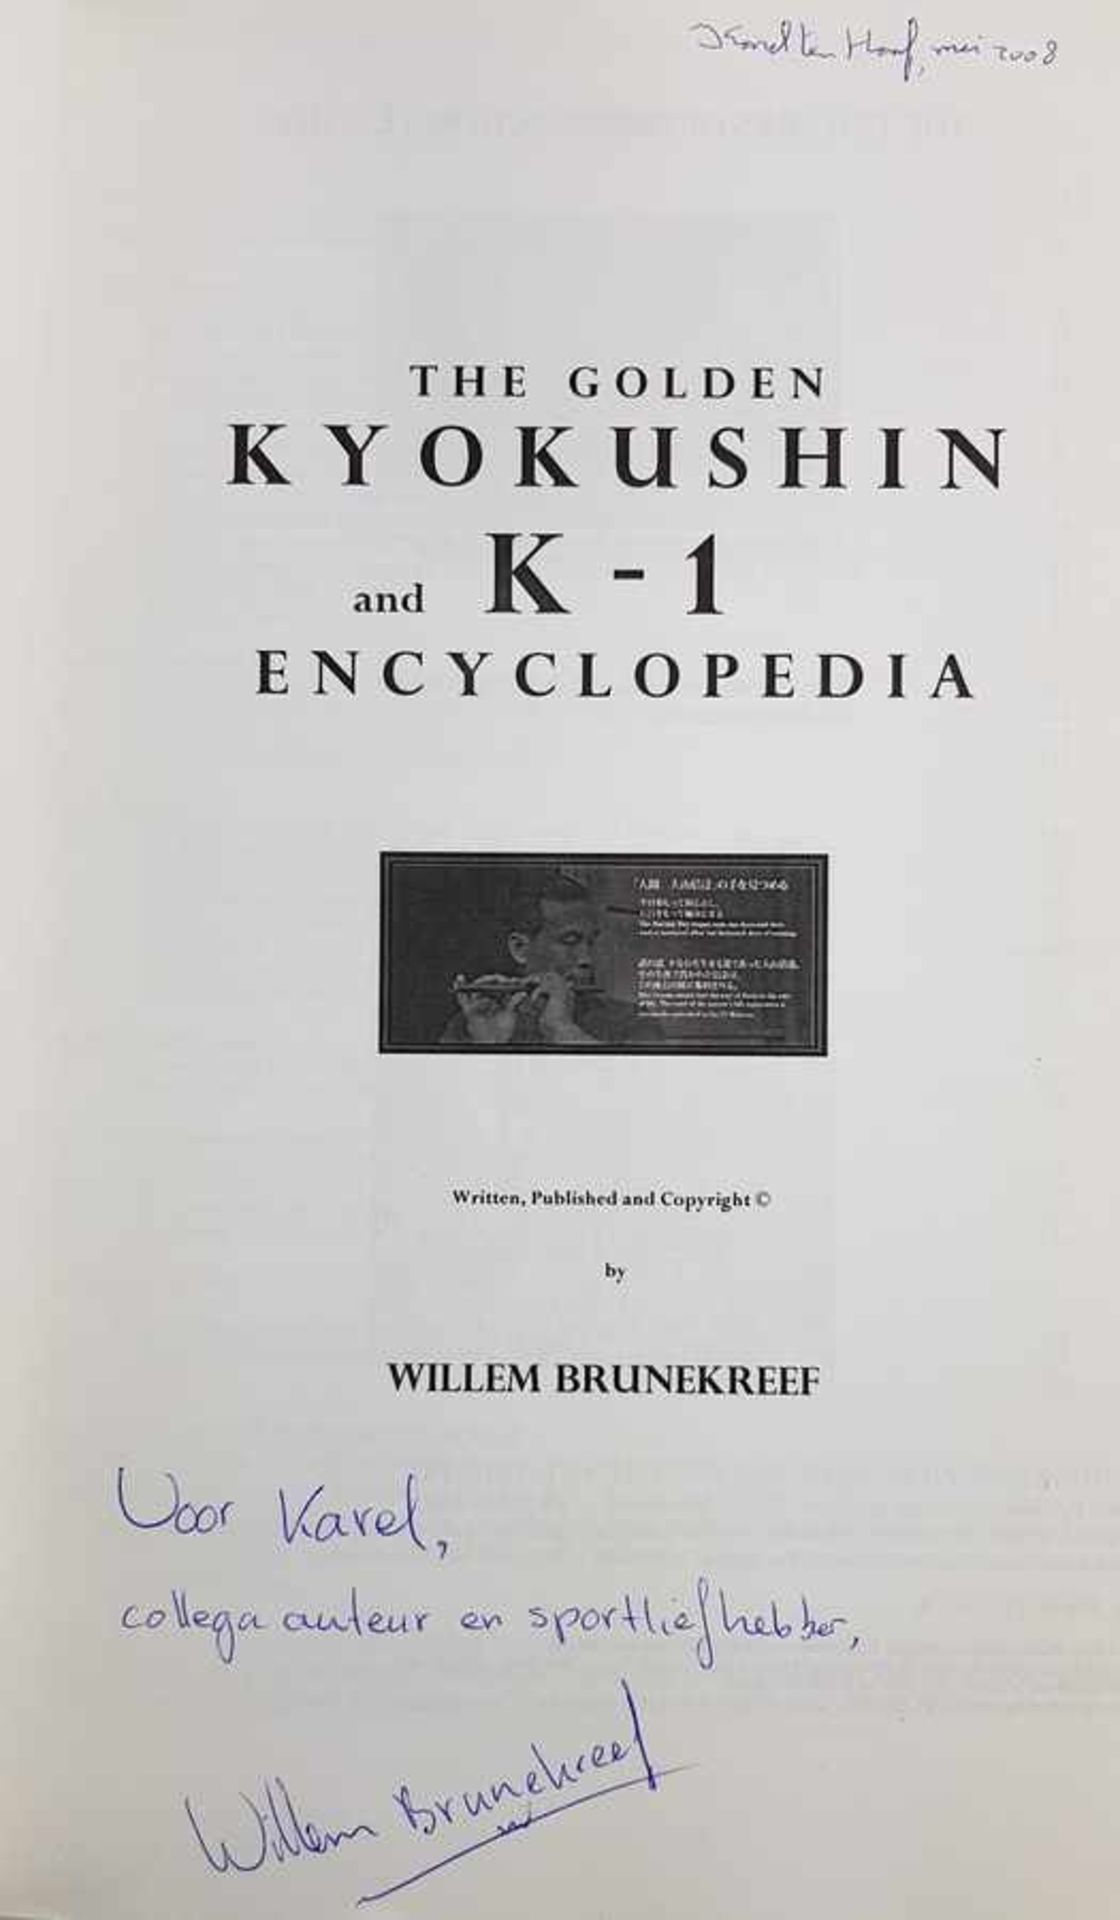 (Boeken) (Sport) Gesigneerd: The Golden Kyokushin and K-1 EncyclopediaWillem Brunekreef - The Golden - Bild 3 aus 4